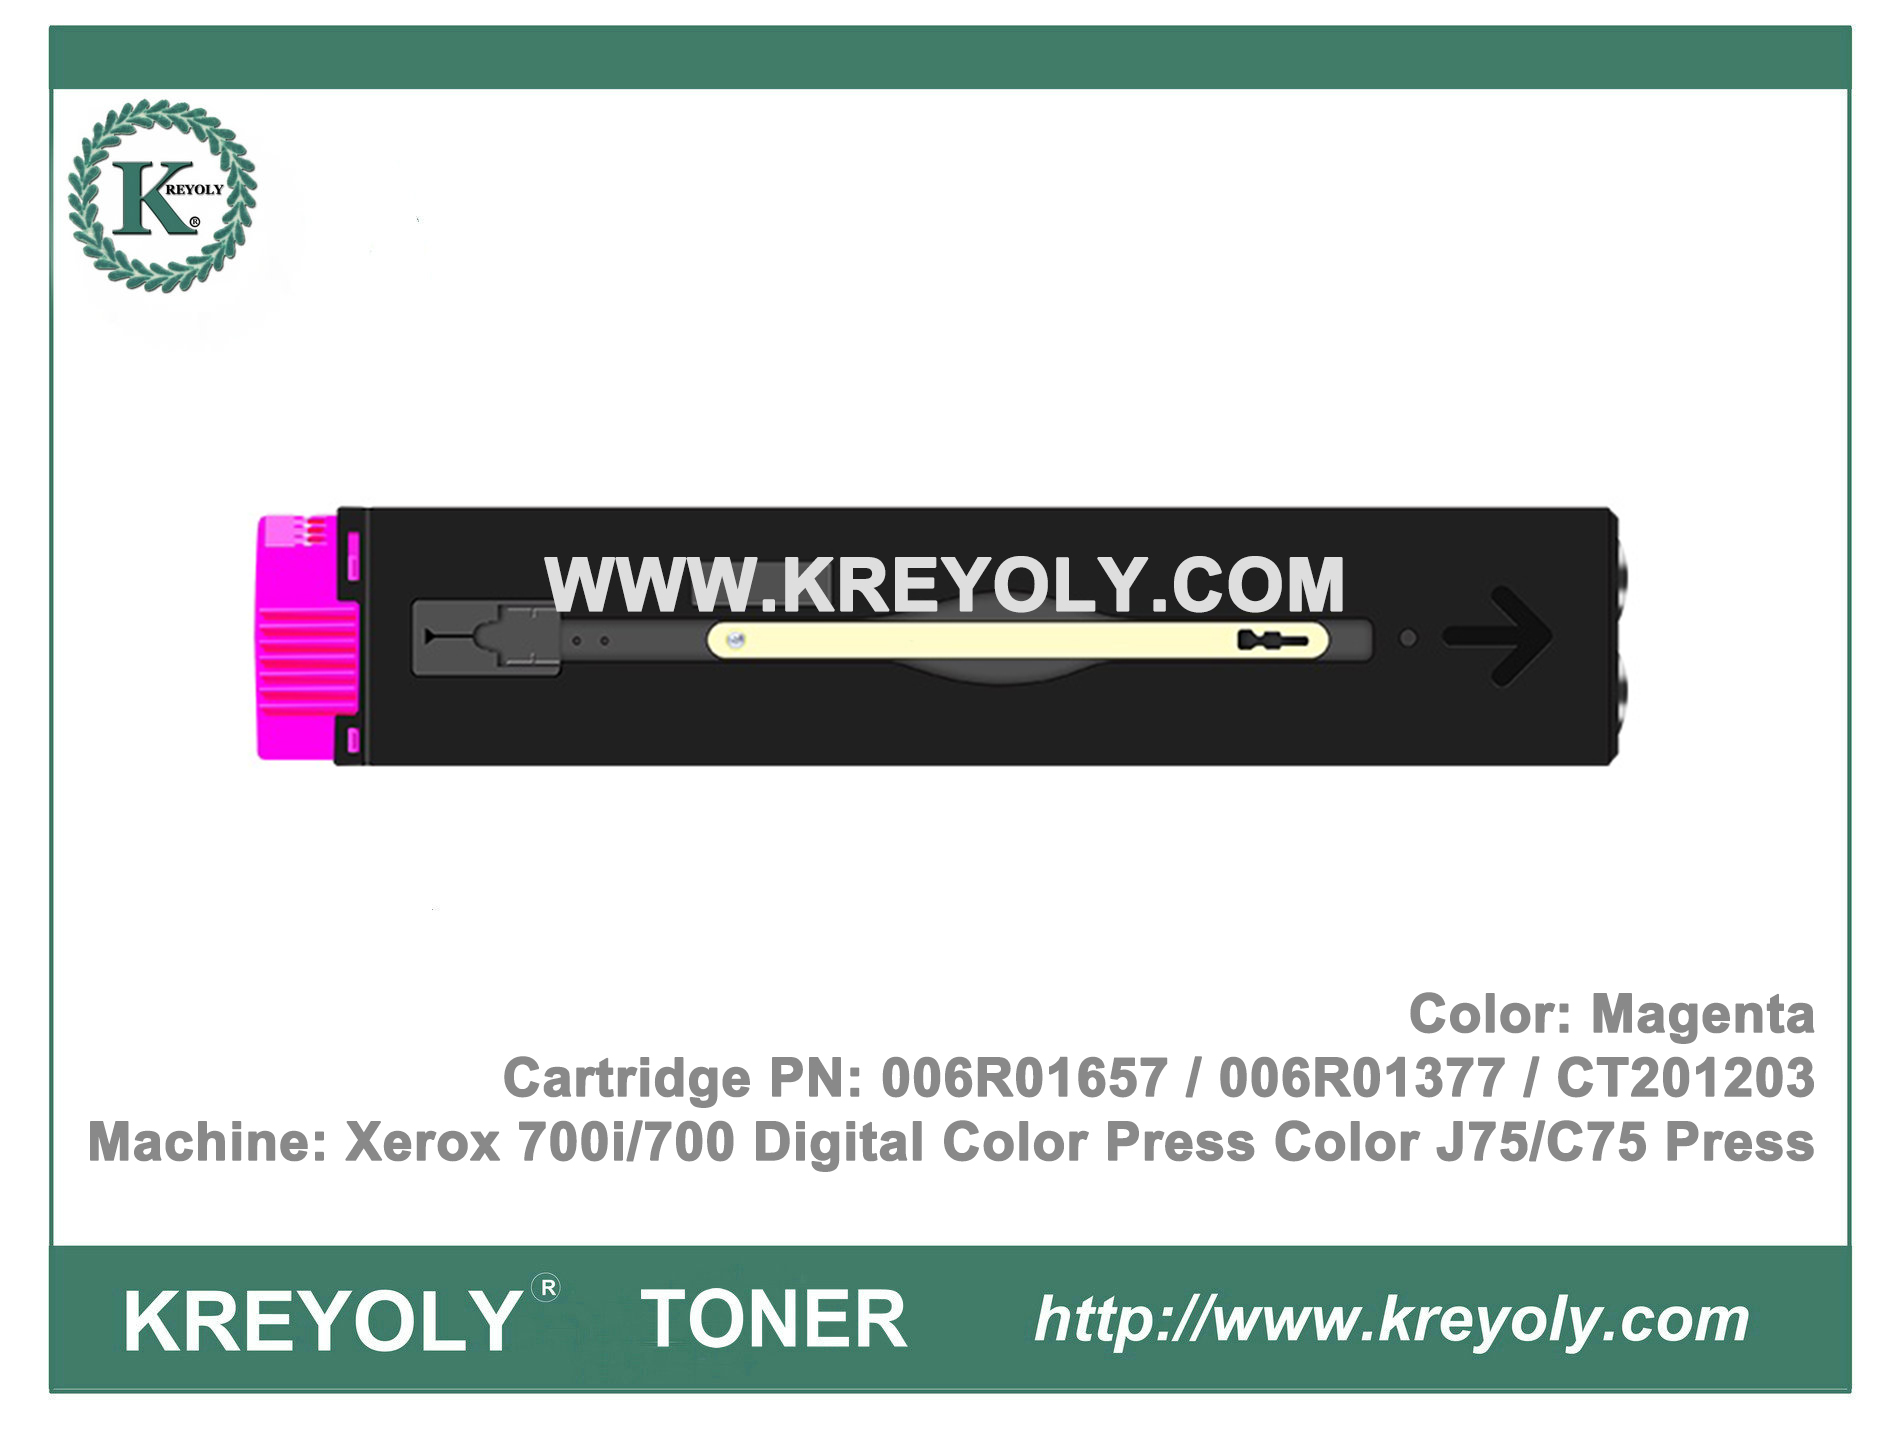 Cartucho de tóner para prensa digital en color Xerox 700i / 700 Prensa en color J75 / C75